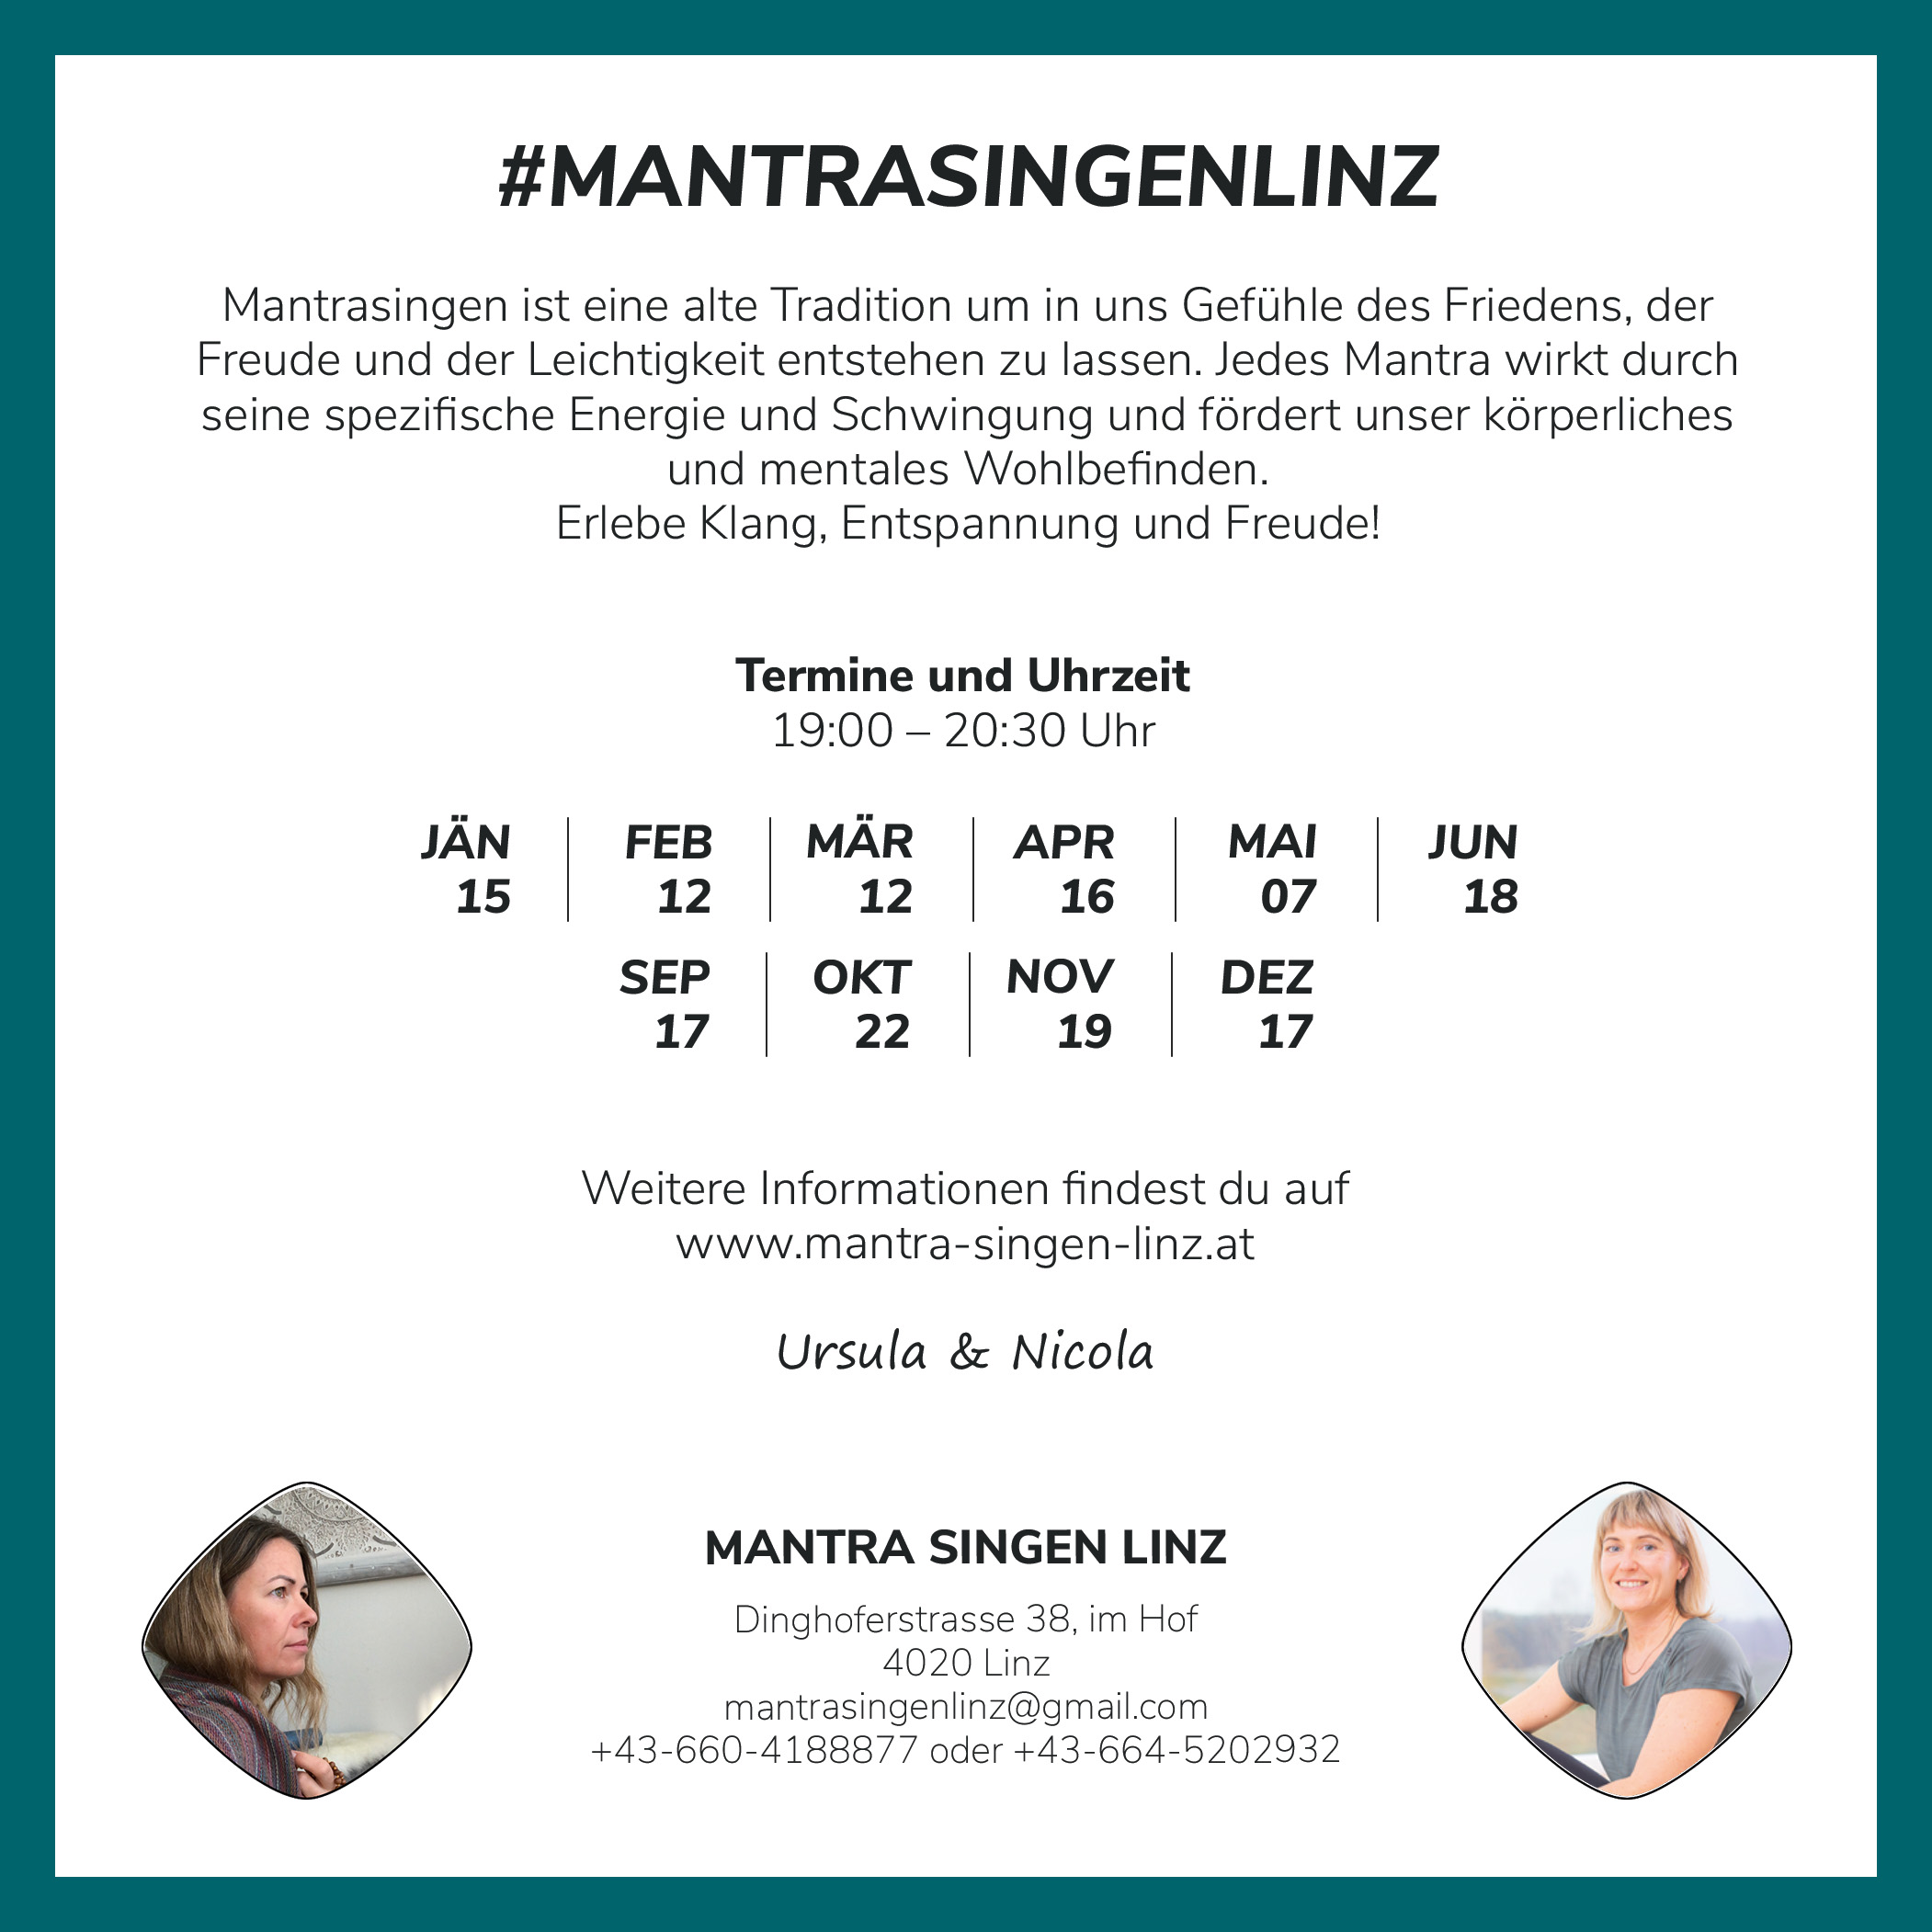 Mantra Singen Linz gesamtes programm 2022 - Rückseite